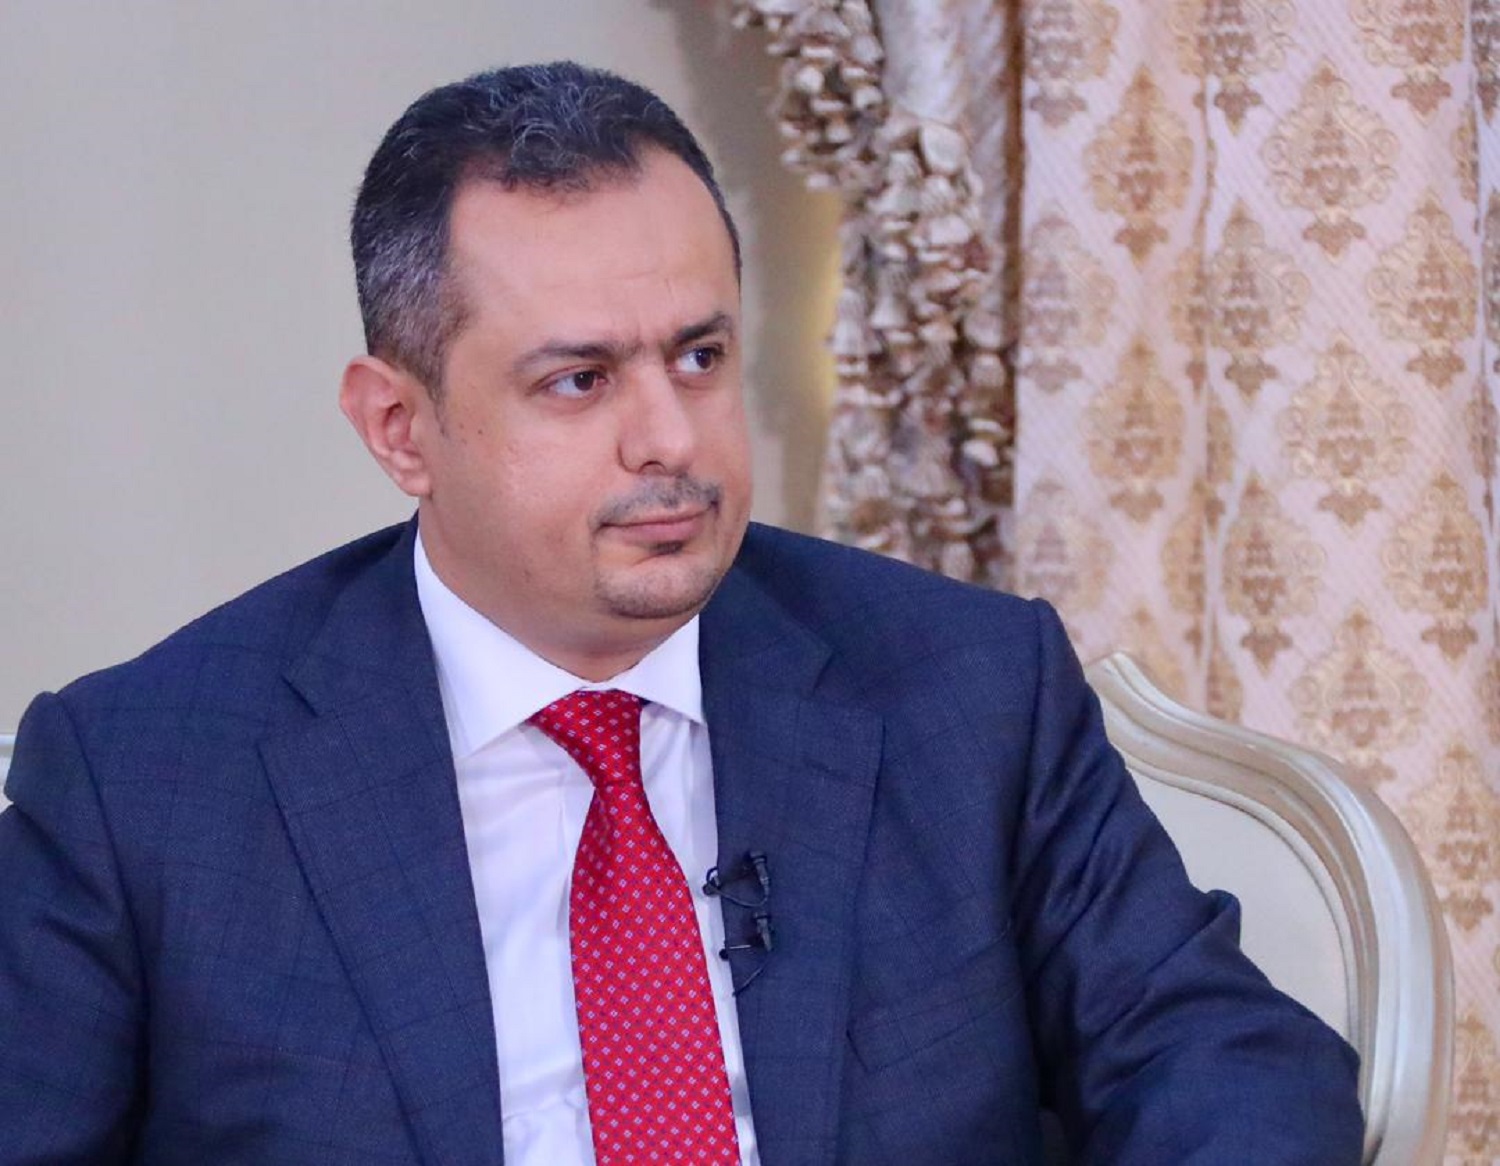 رئيس الوزراء الدكتور "معين عبدالملك" : يجب على الأمم المتحدة كشف إنتهاكات الحوثيين وجرائمهم وعدم الرضوخ وتهديداتهم